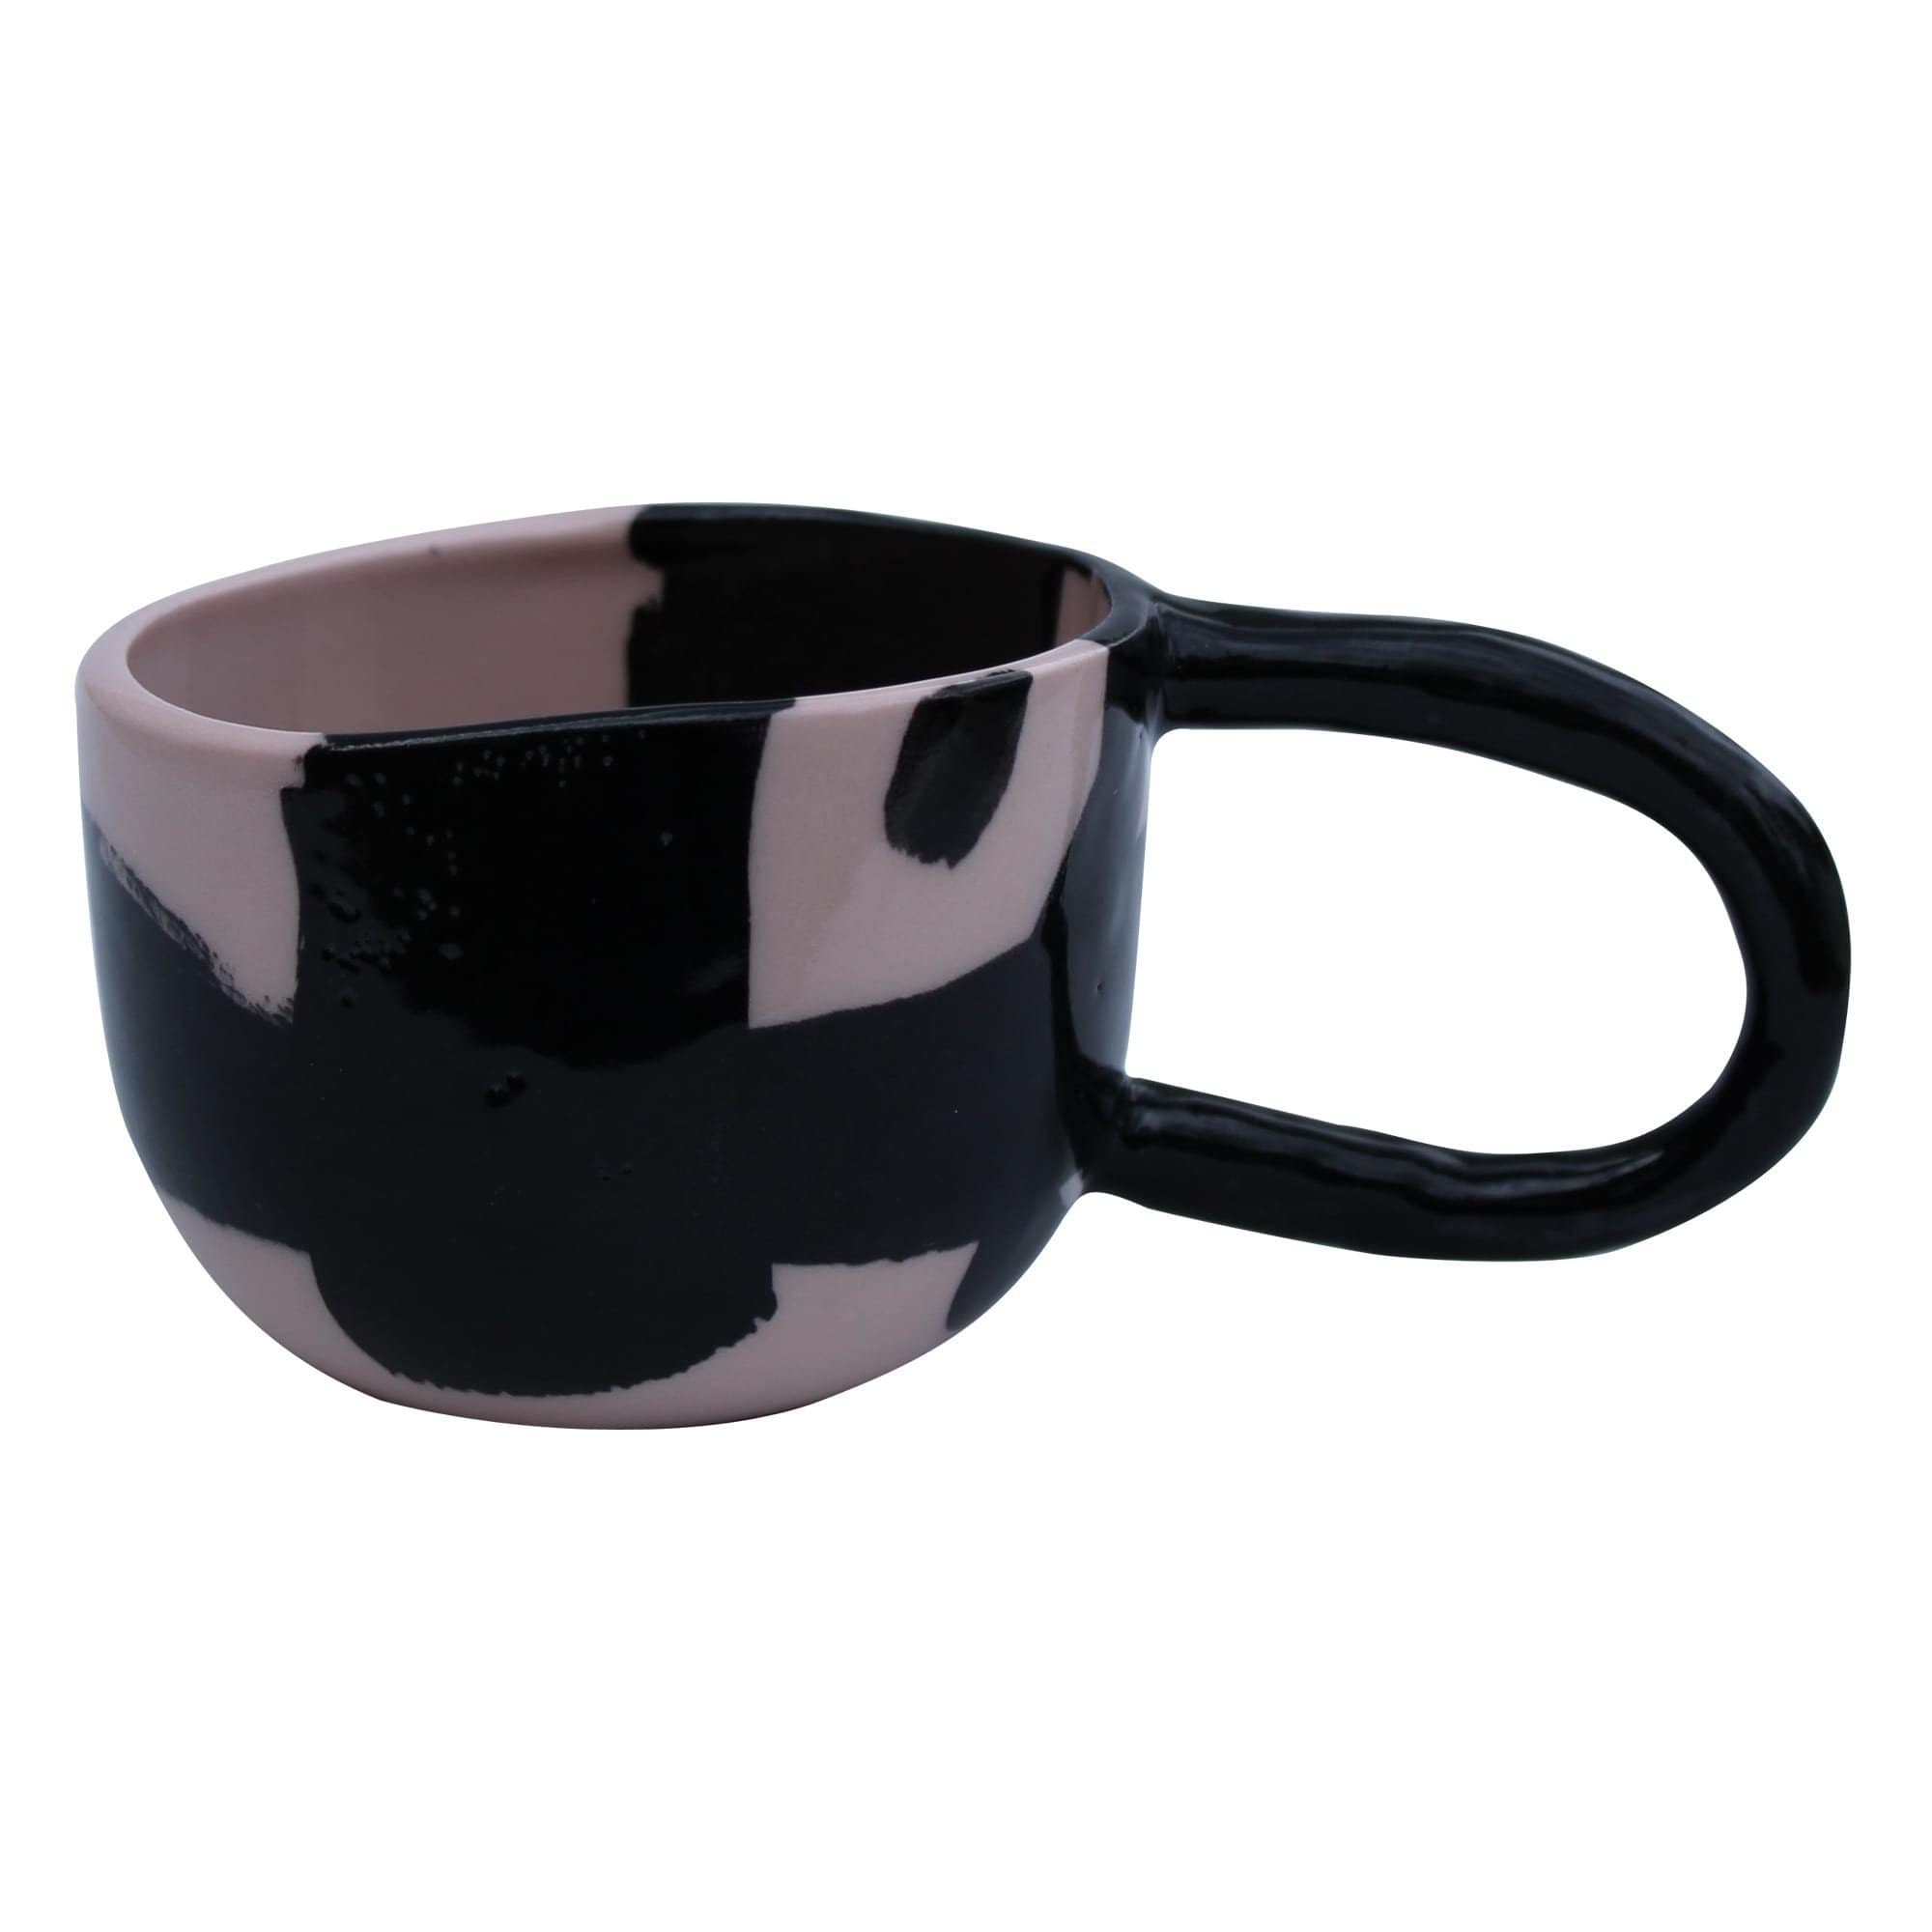 Tea-Cup-Stroke-Ceramics-Kaz Ceramics-Greenhouse Interiors